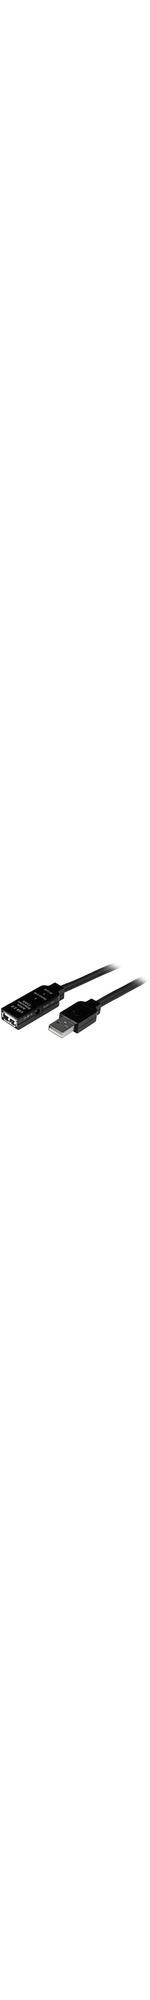 StarTech.com 20m USB 2.0 Active Extension Cable - M/F - USB - 1x Type A Male USB - 1 x Type A Female USB